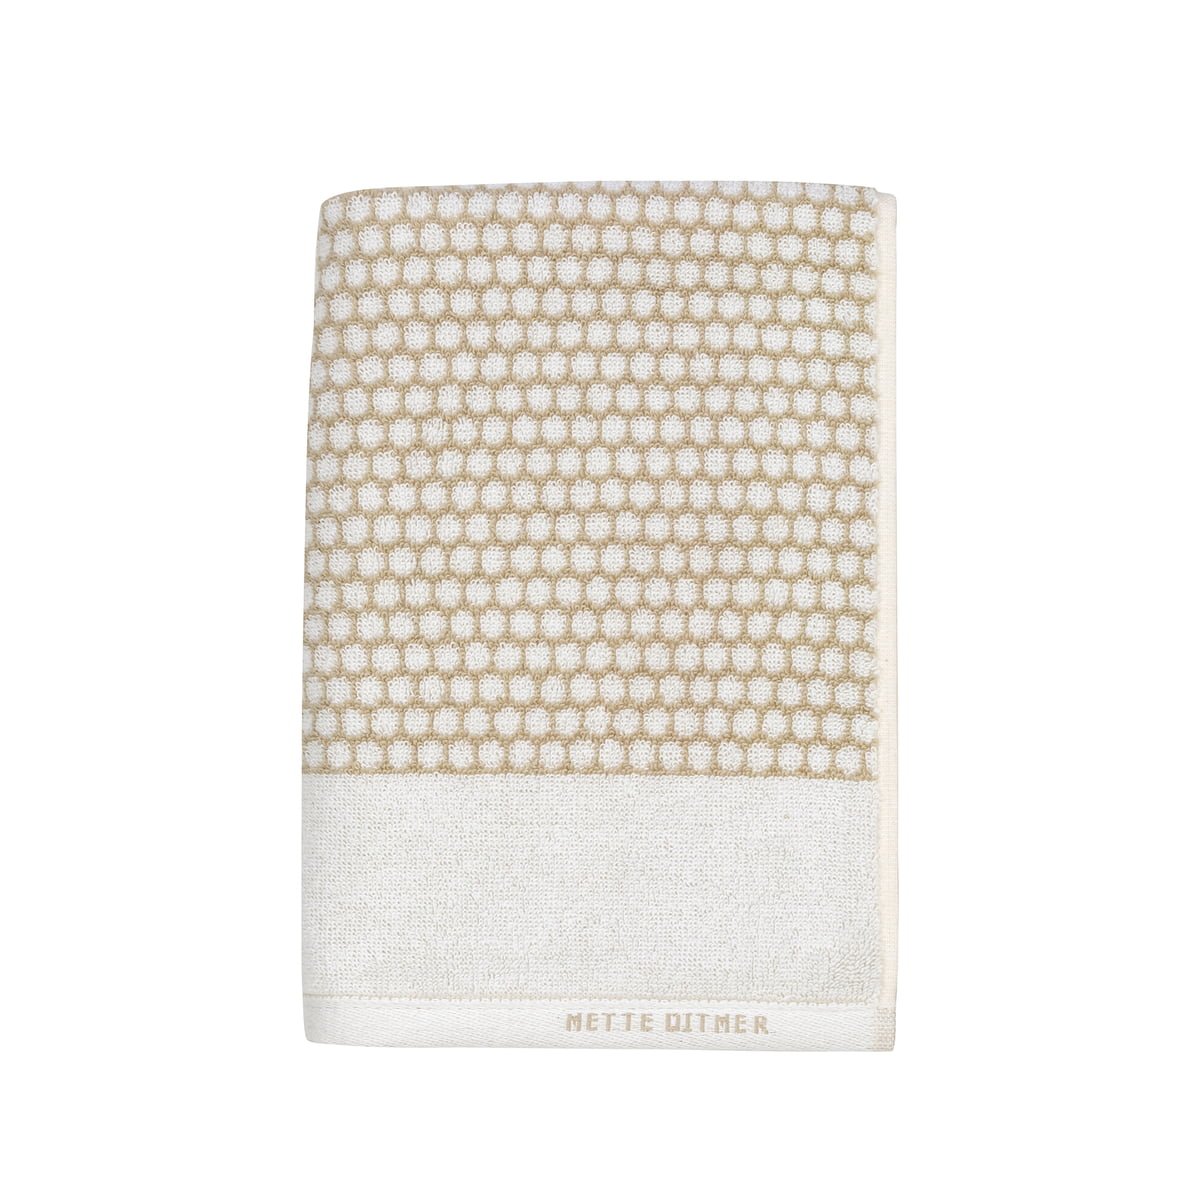 Mette Ditmer - GRID towel 50x100 - Sand - Hjemme og kjøkken